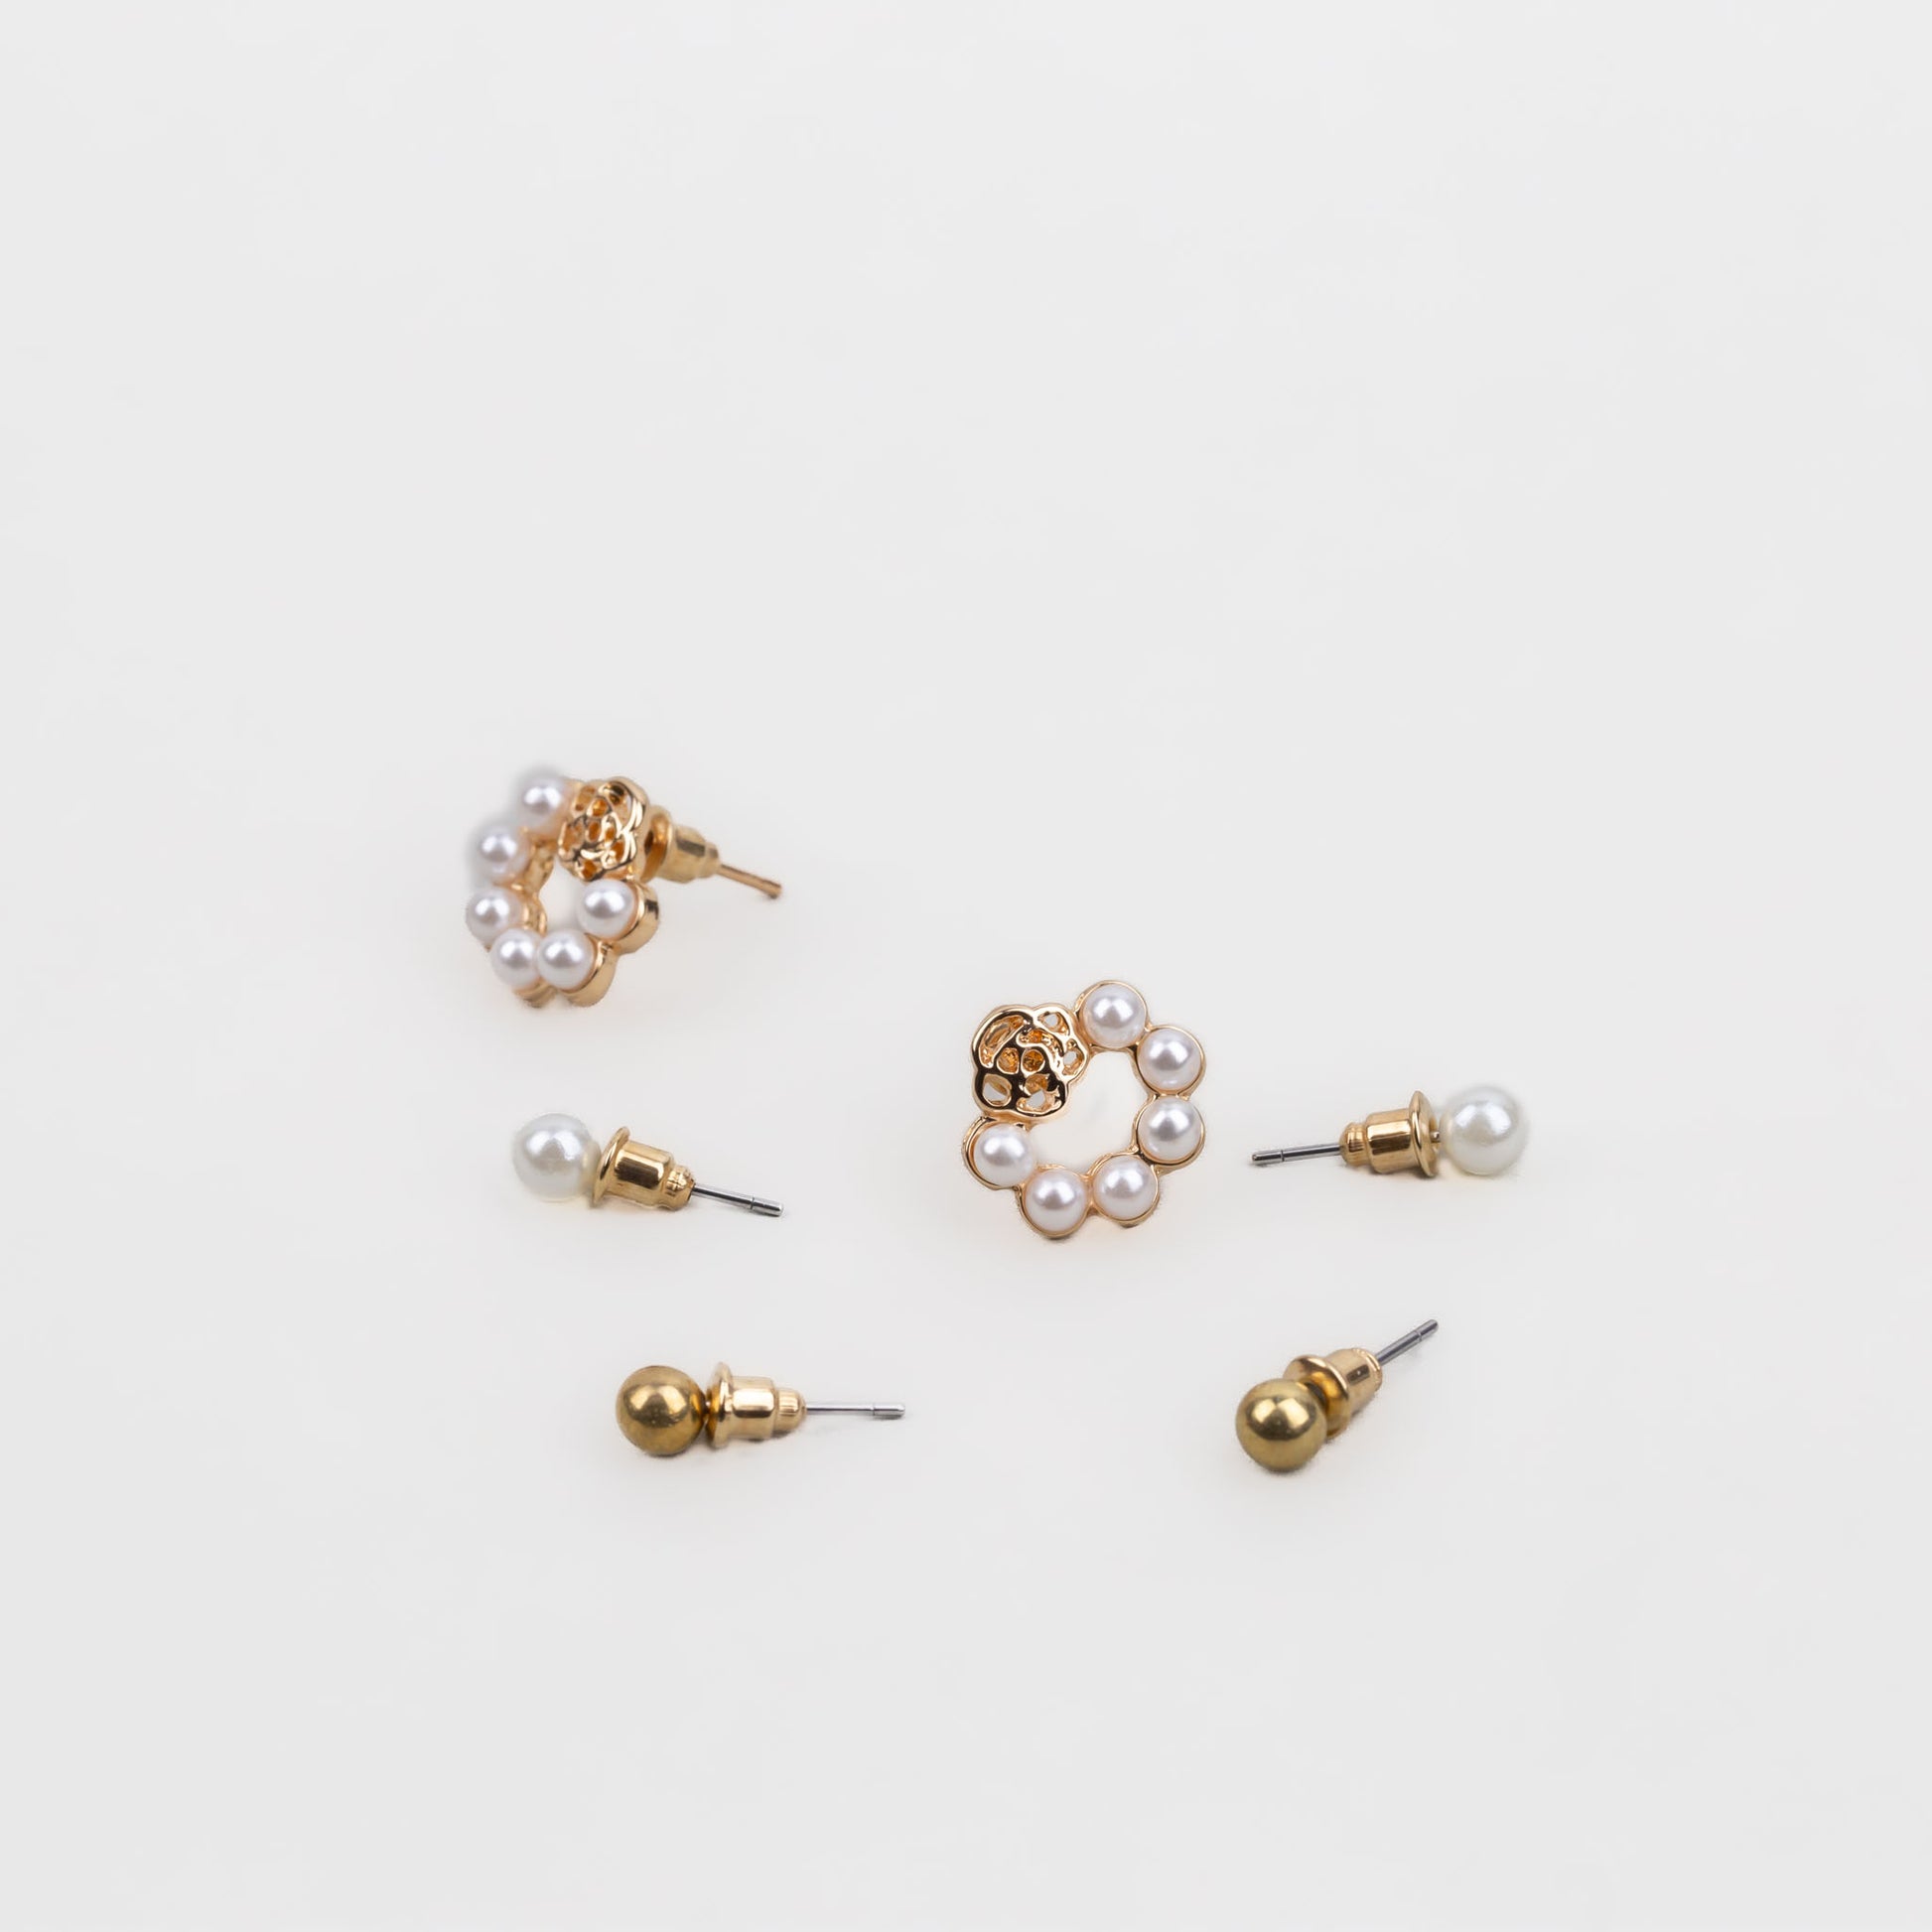 Cercei mici cu perle discrete și biluțe, set 3 perechi - Auriu